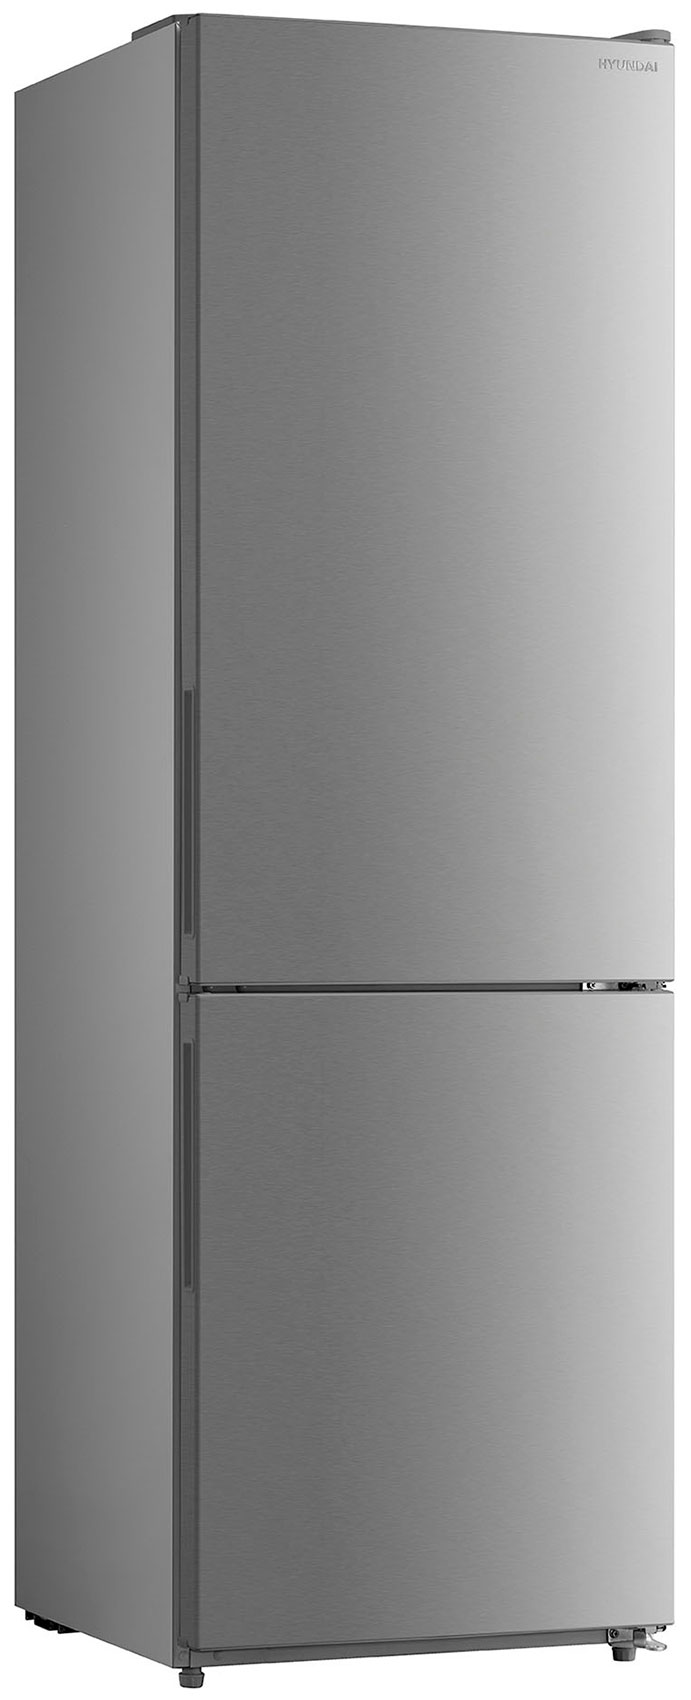 Двухкамерный холодильник Hyundai CC3093FIX нержавеющая сталь фото